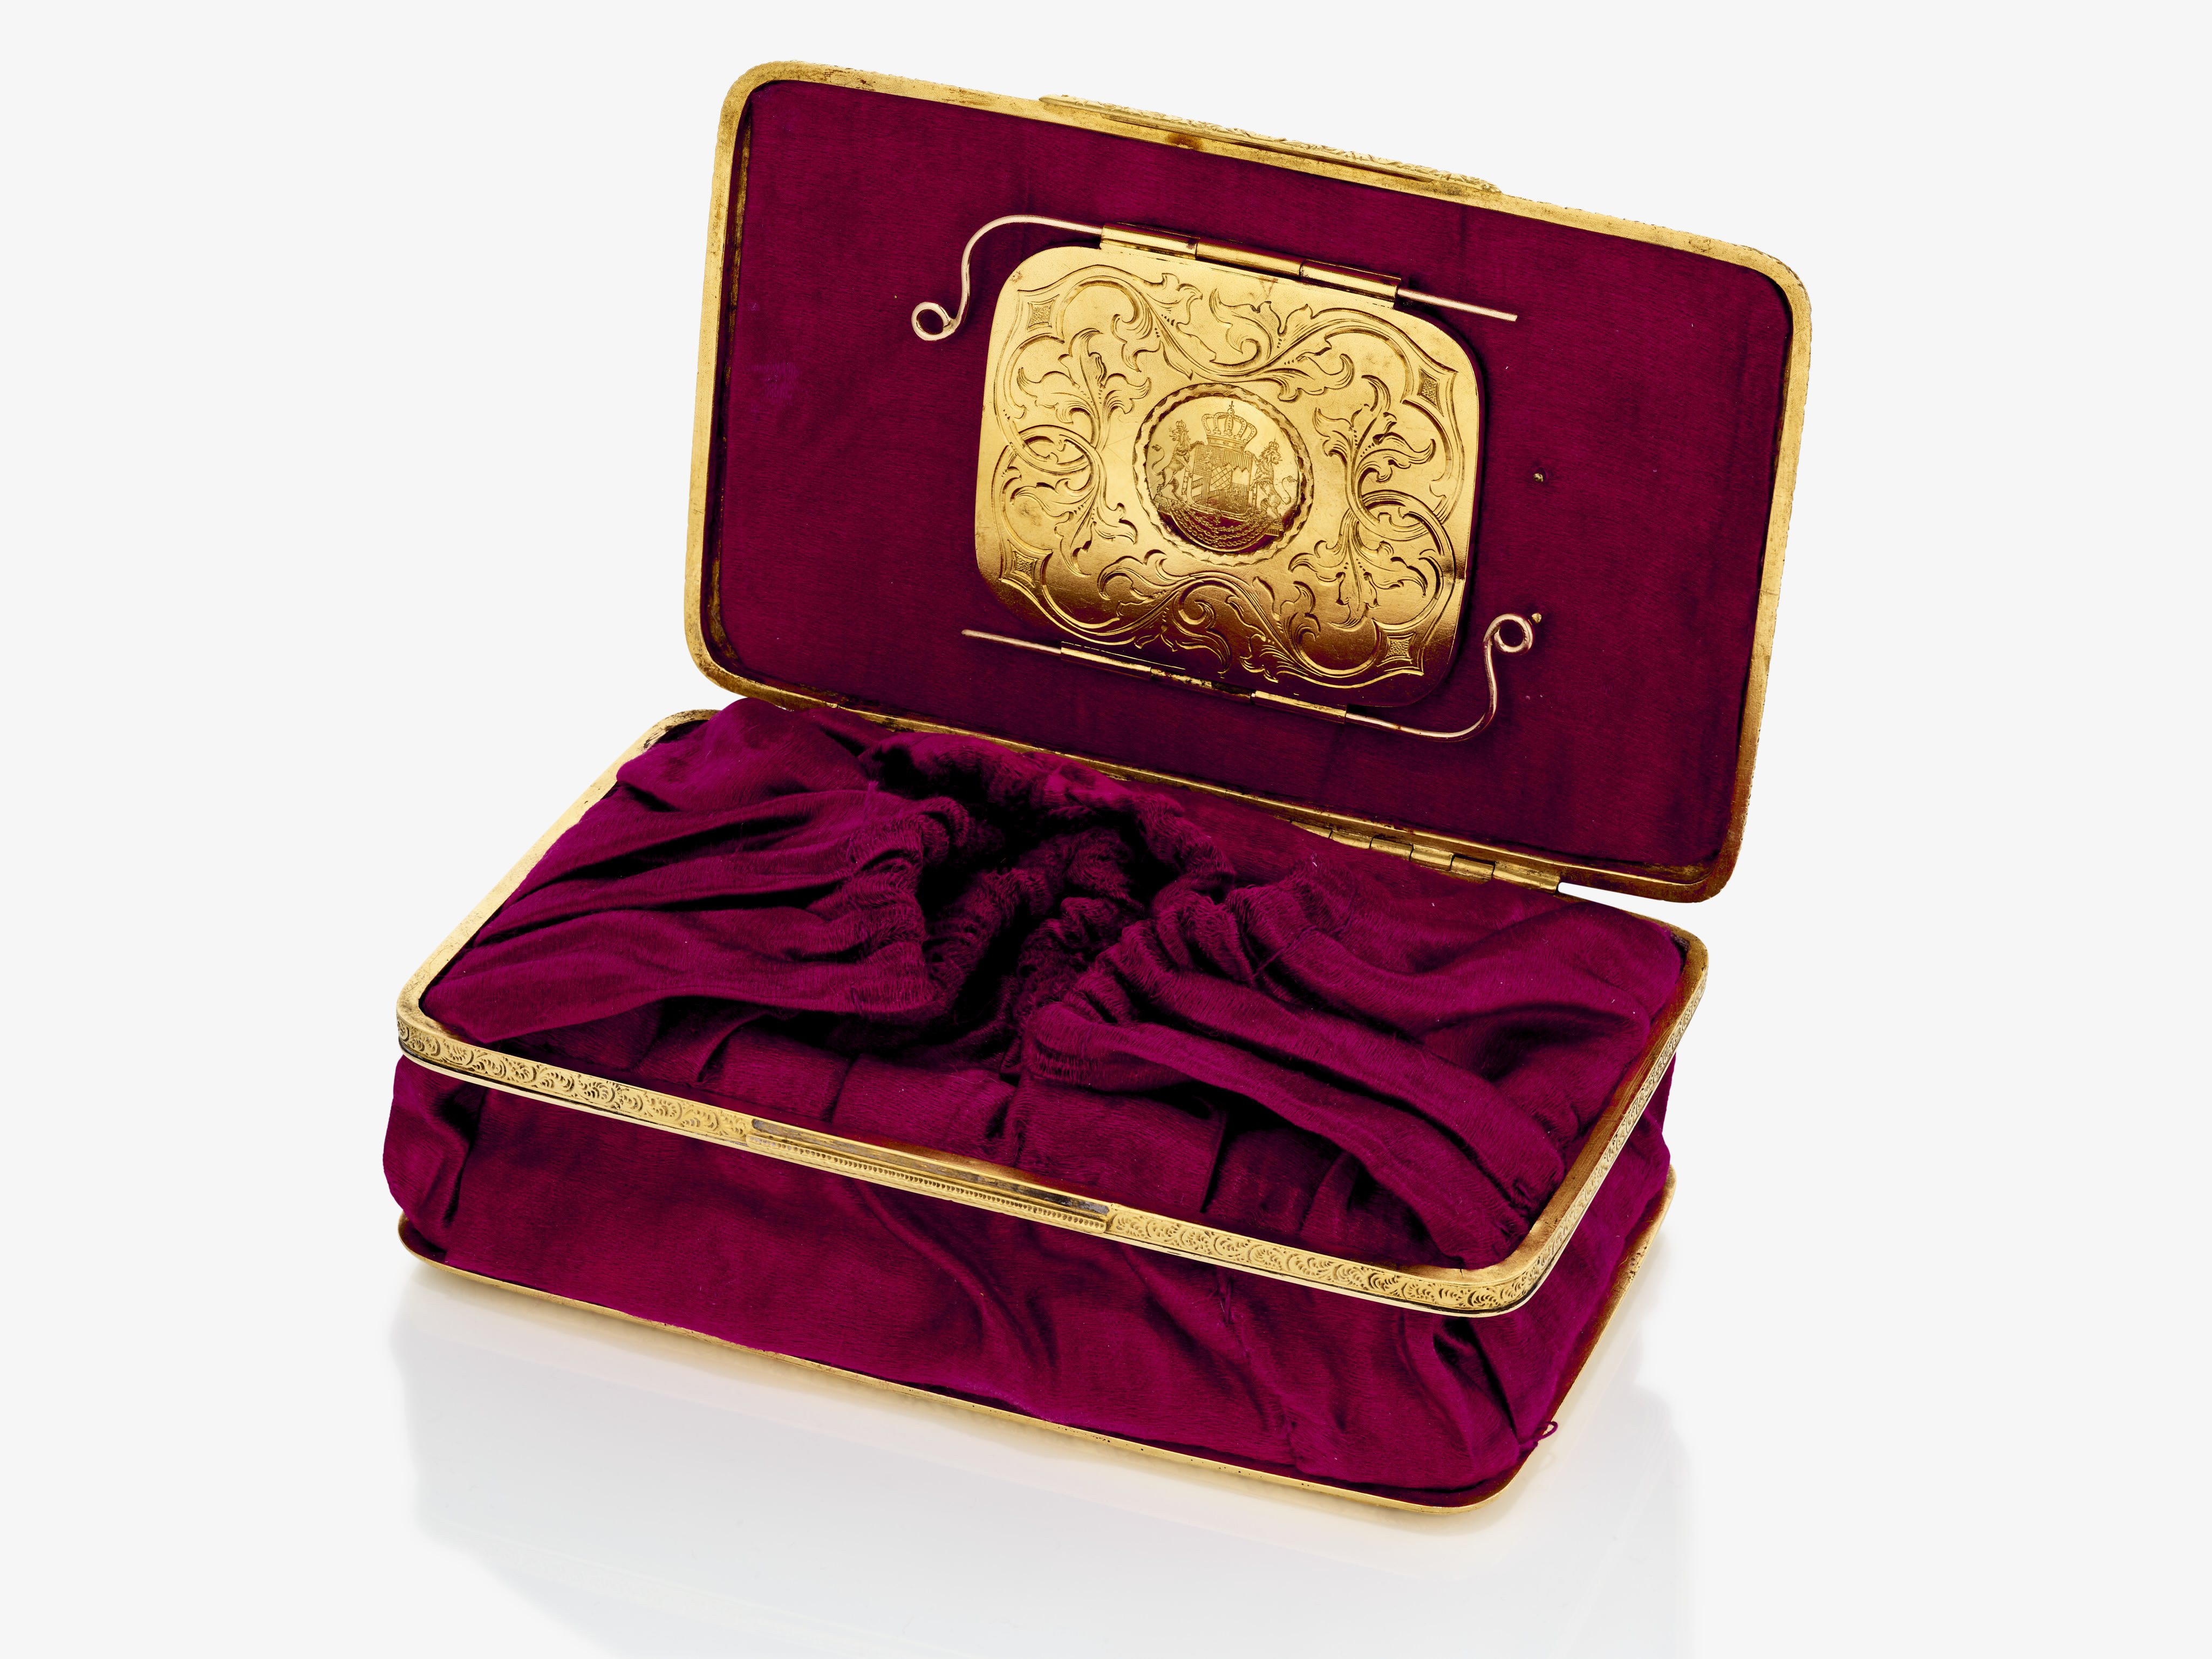 Geldbörse in Form einer prächtigen Golddose - Image 3 of 3